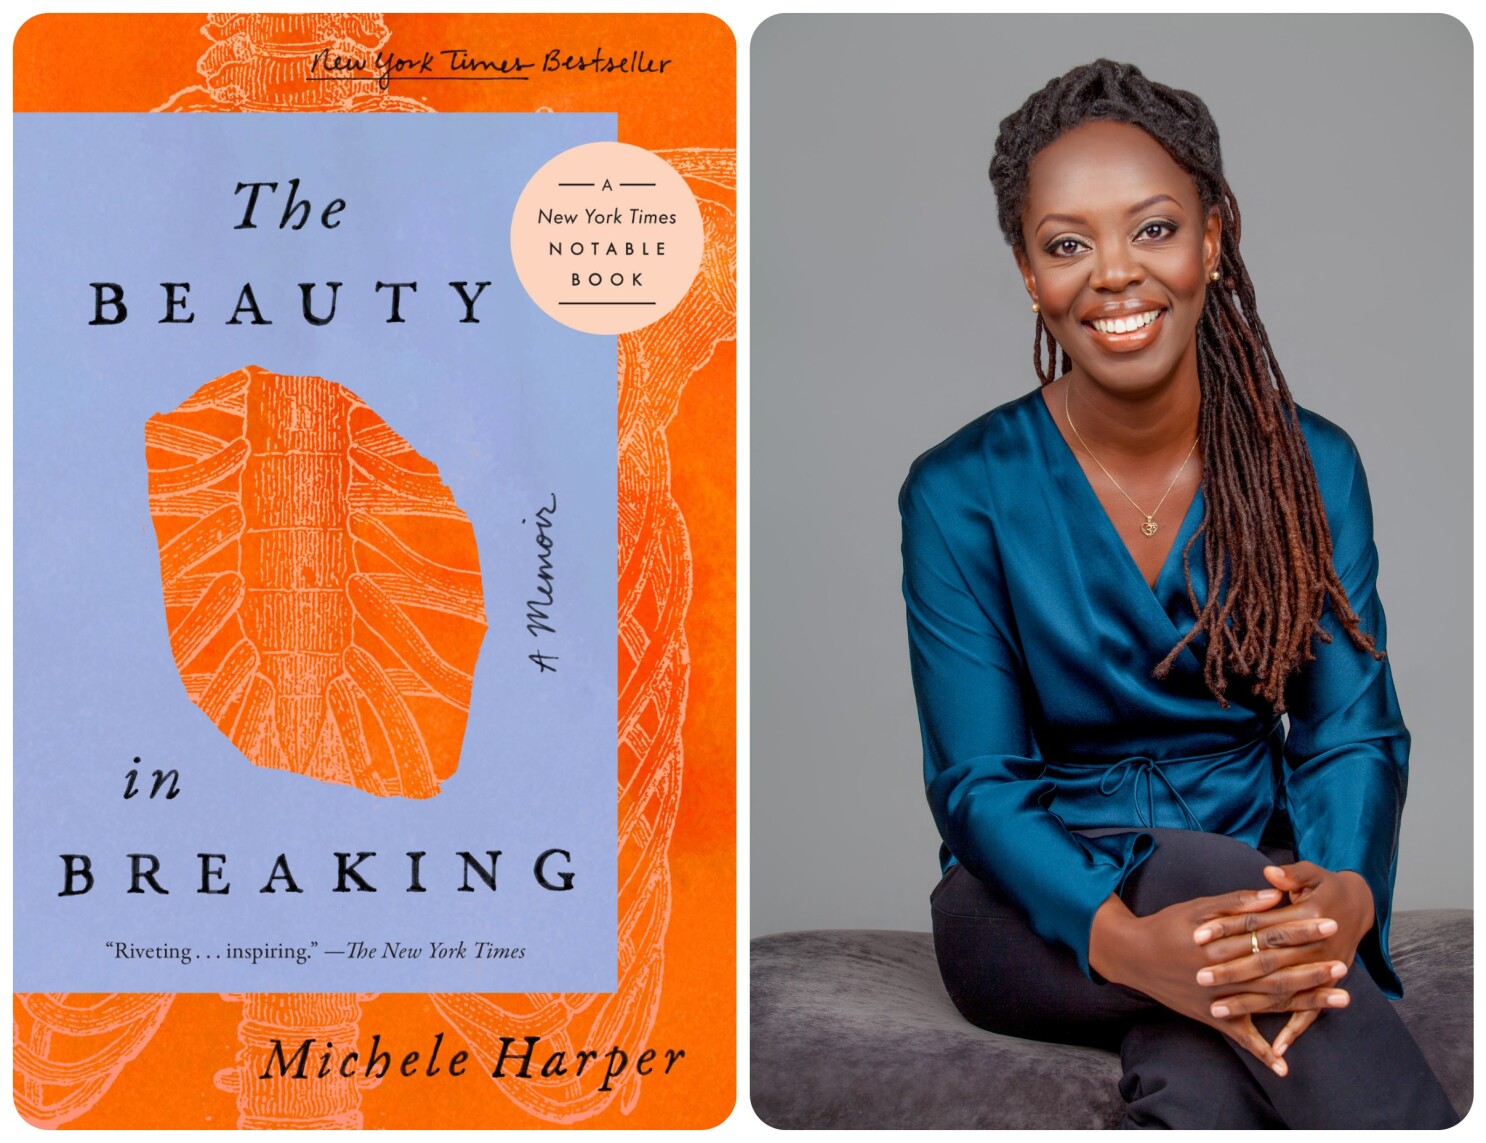 Michele Harper: The Beauty in Breaking book